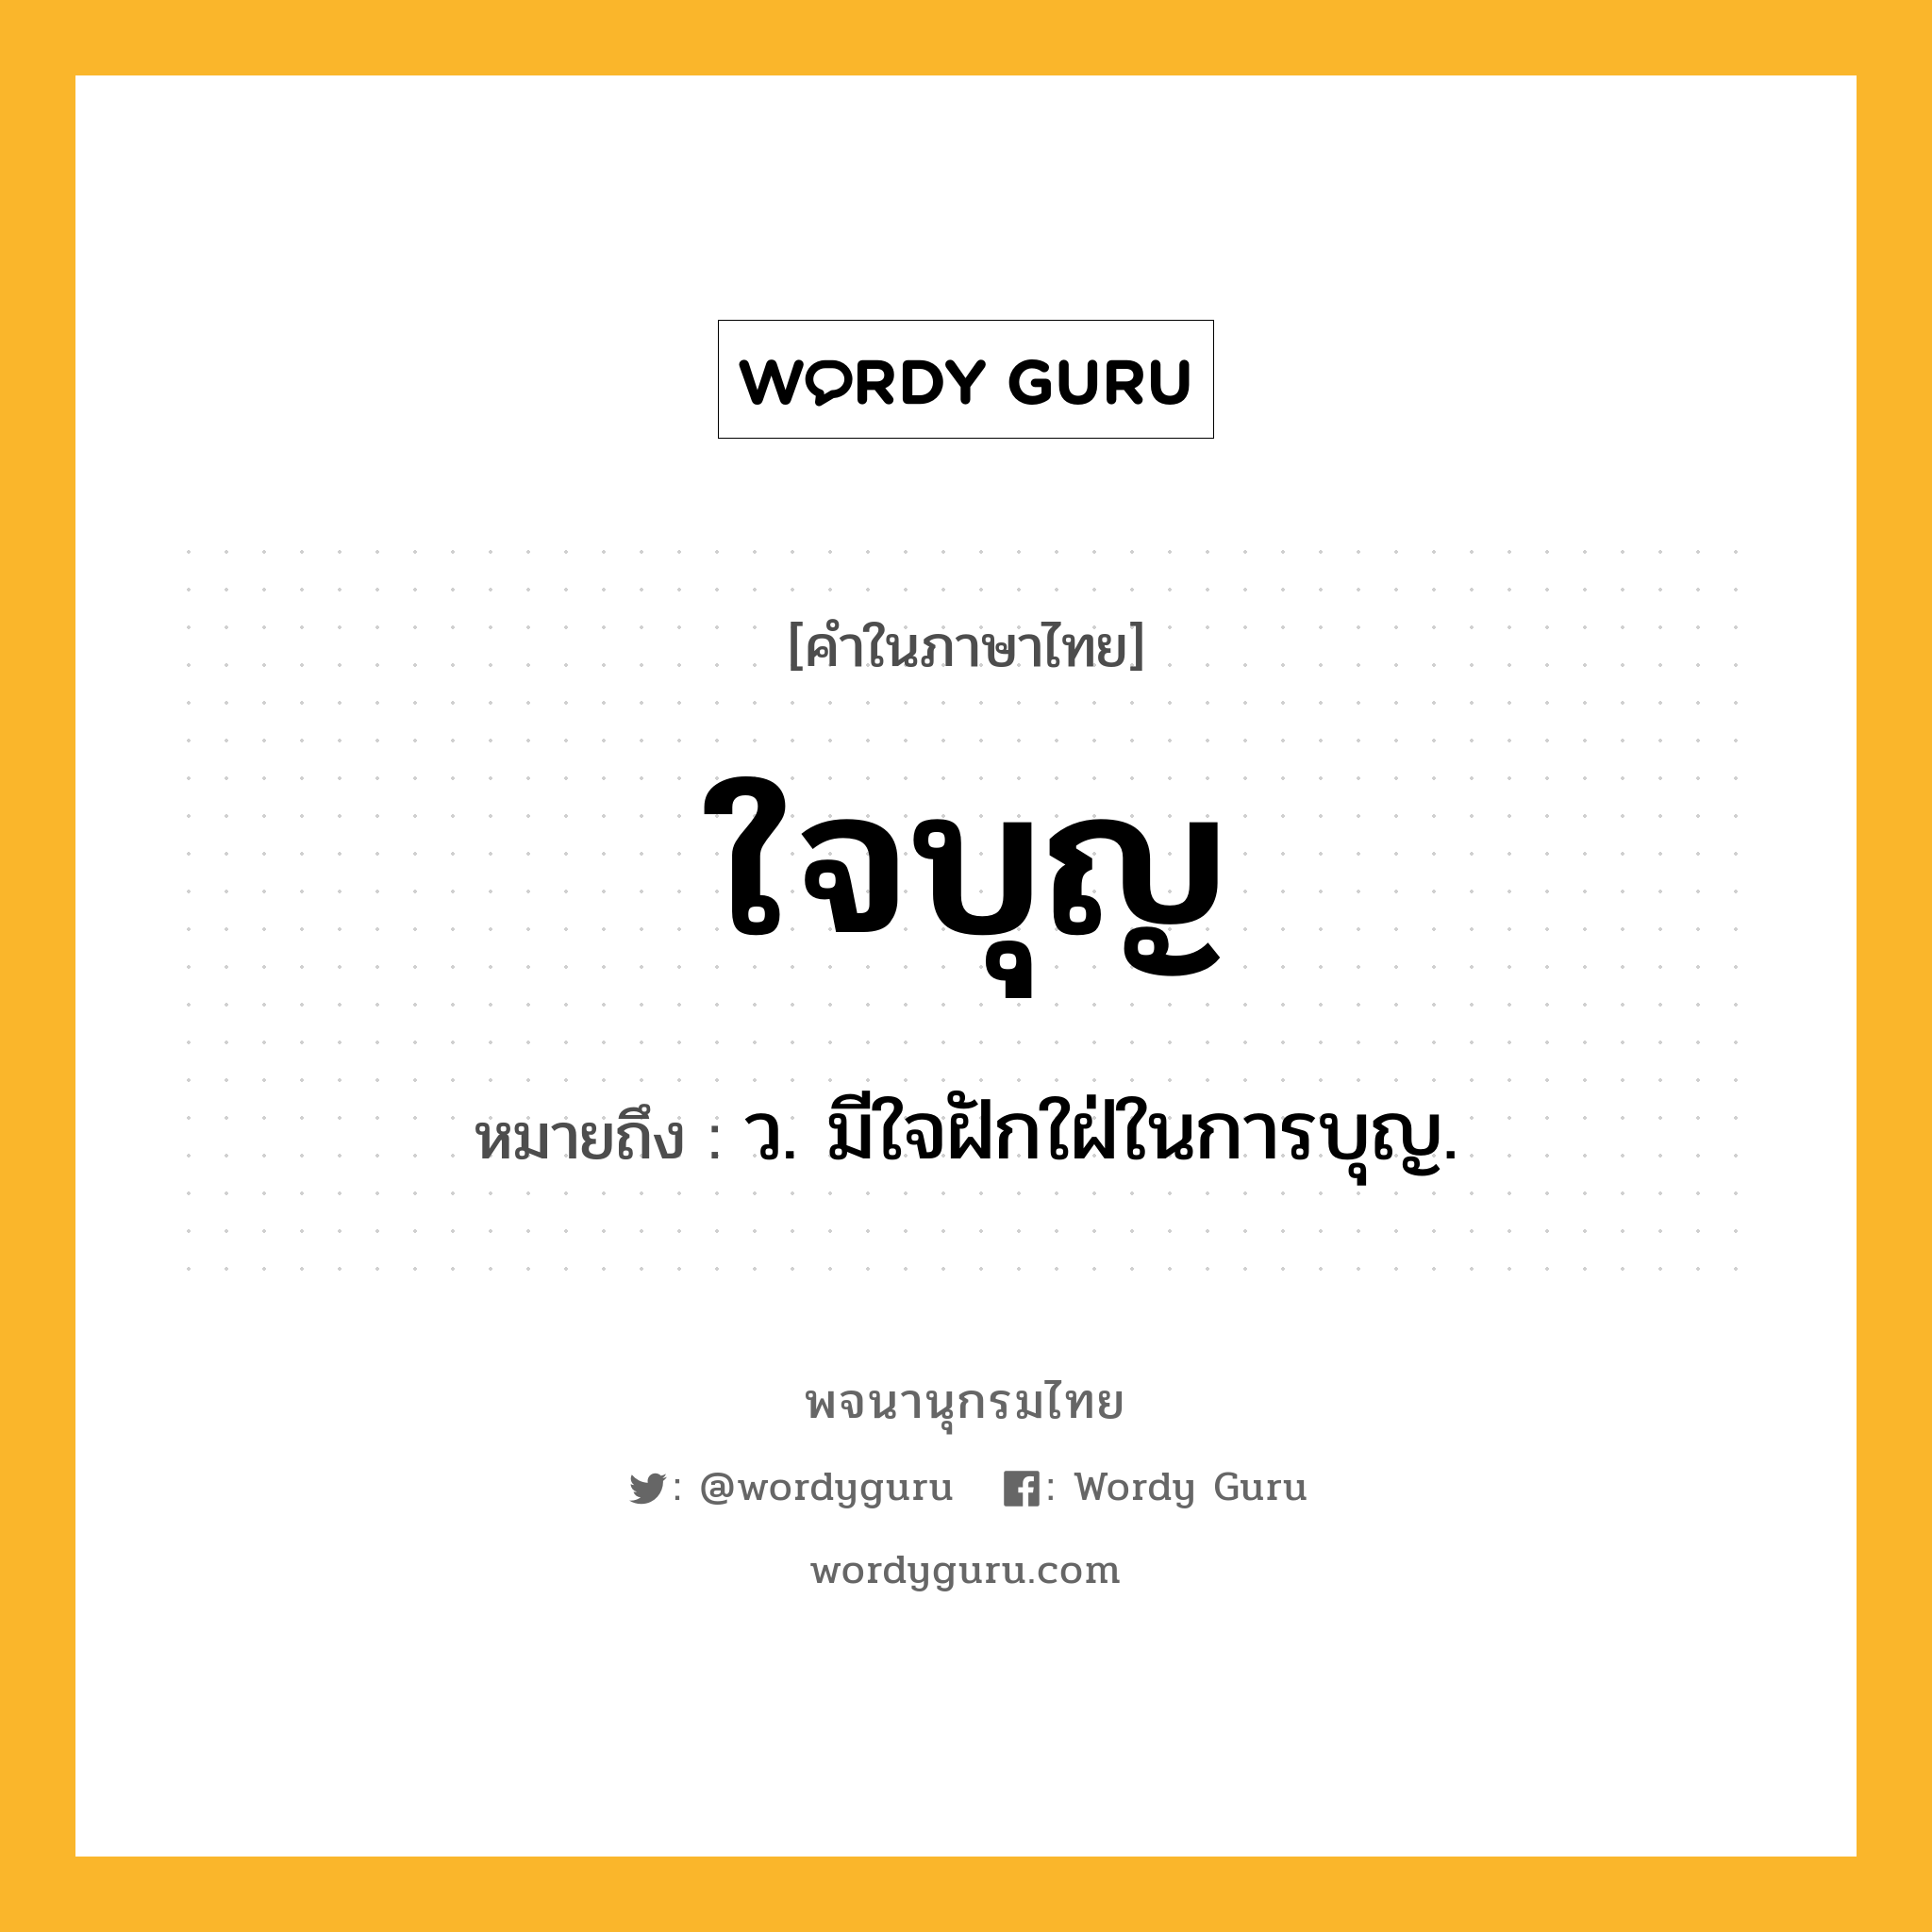 ใจบุญ ความหมาย หมายถึงอะไร?, คำในภาษาไทย ใจบุญ หมายถึง ว. มีใจฝักใฝ่ในการบุญ.